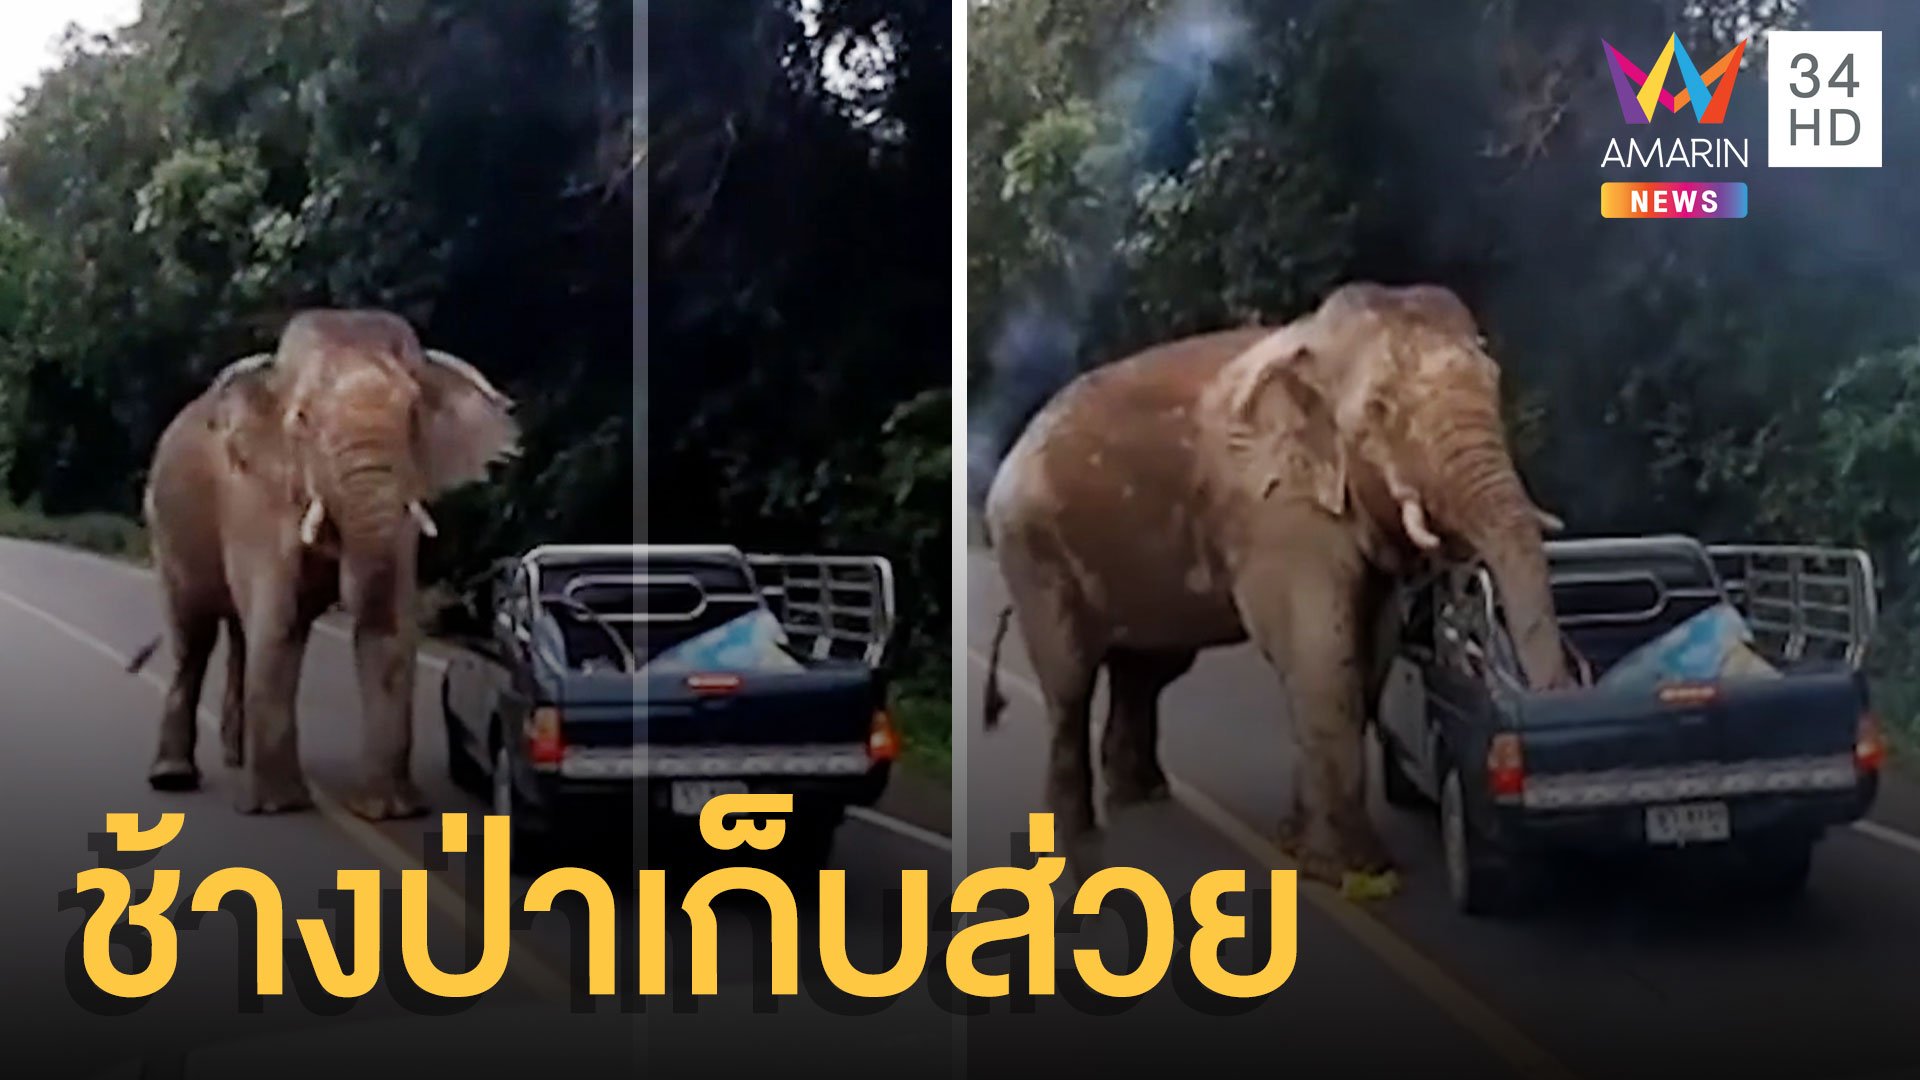 ช้างป่าเพชรบุรีตั้งด่านเก็บส่วย ขโมยของท้ายรถกระบะ | ข่าวอรุณอมรินทร์ | 2 ก.ย. 64 | AMARIN TVHD34